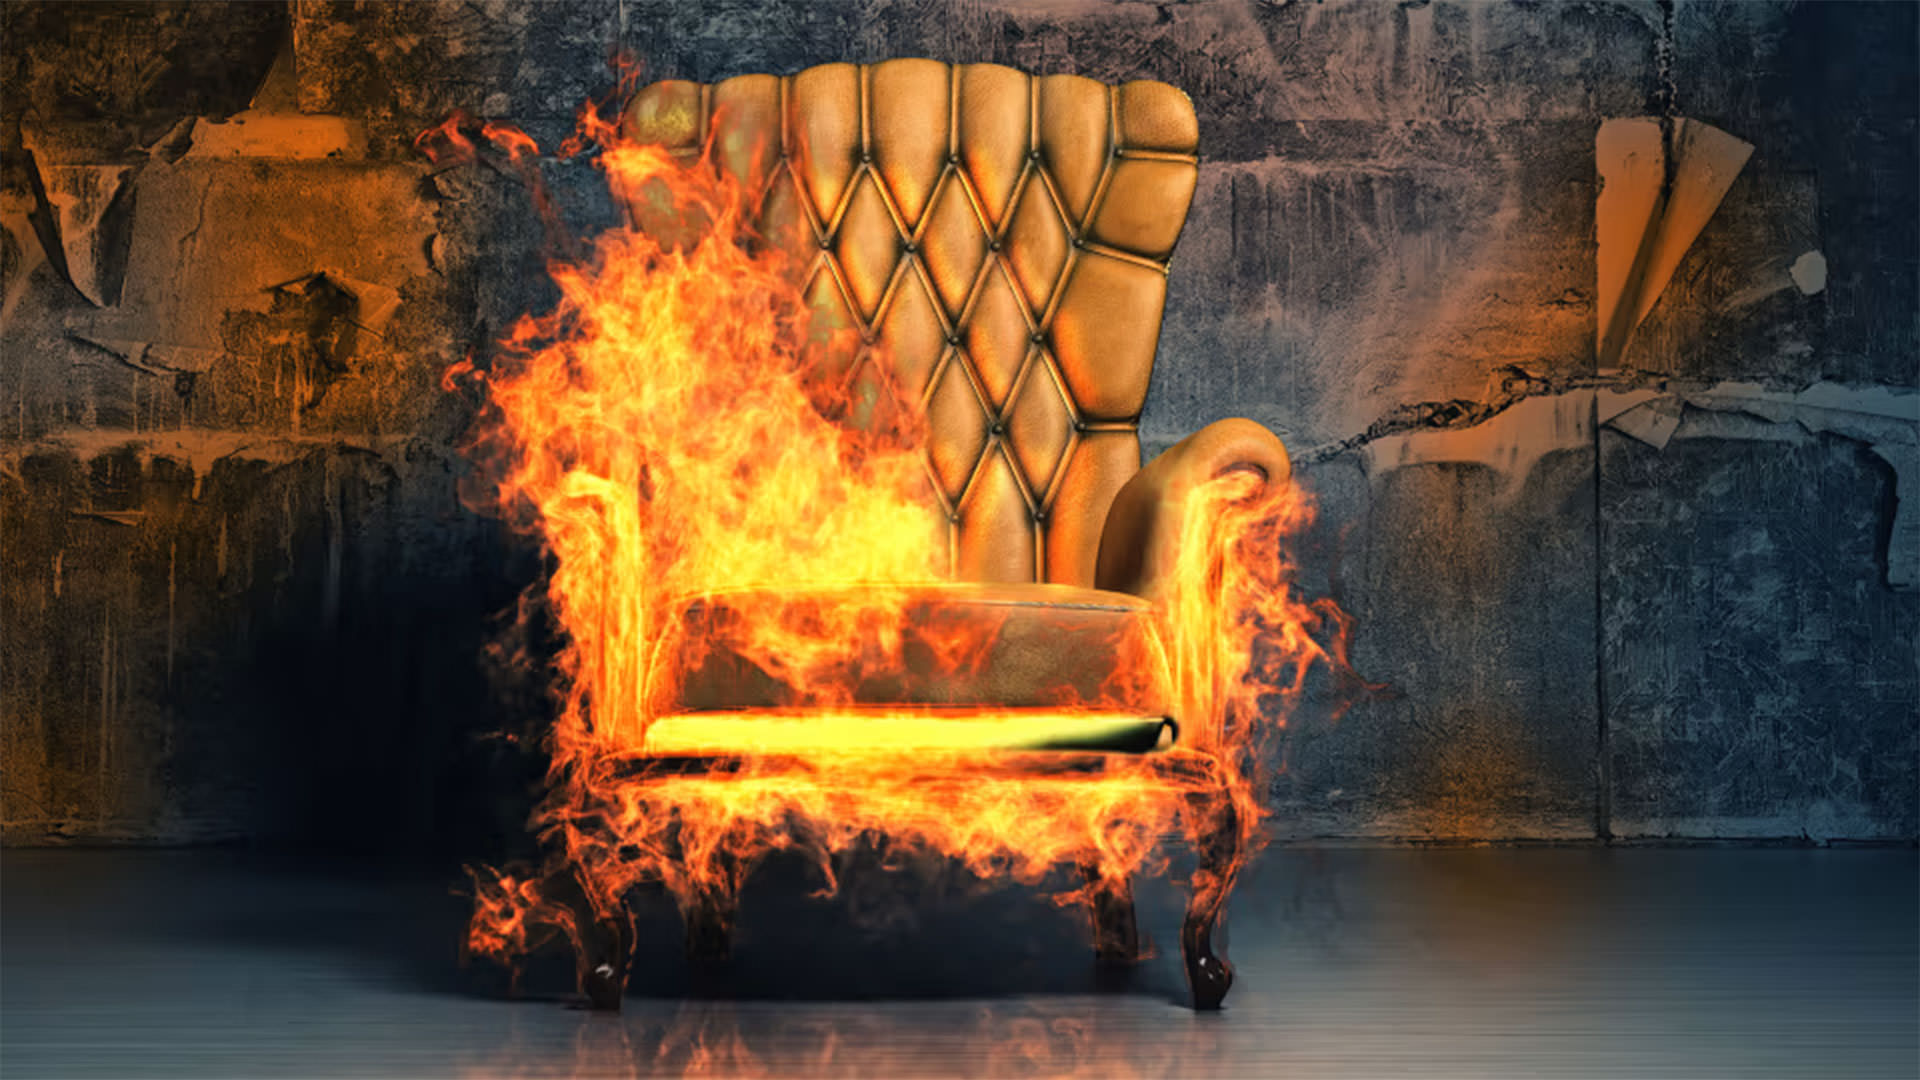 صندلی گرم شونده گرمکن صندلی / heated seats آتش